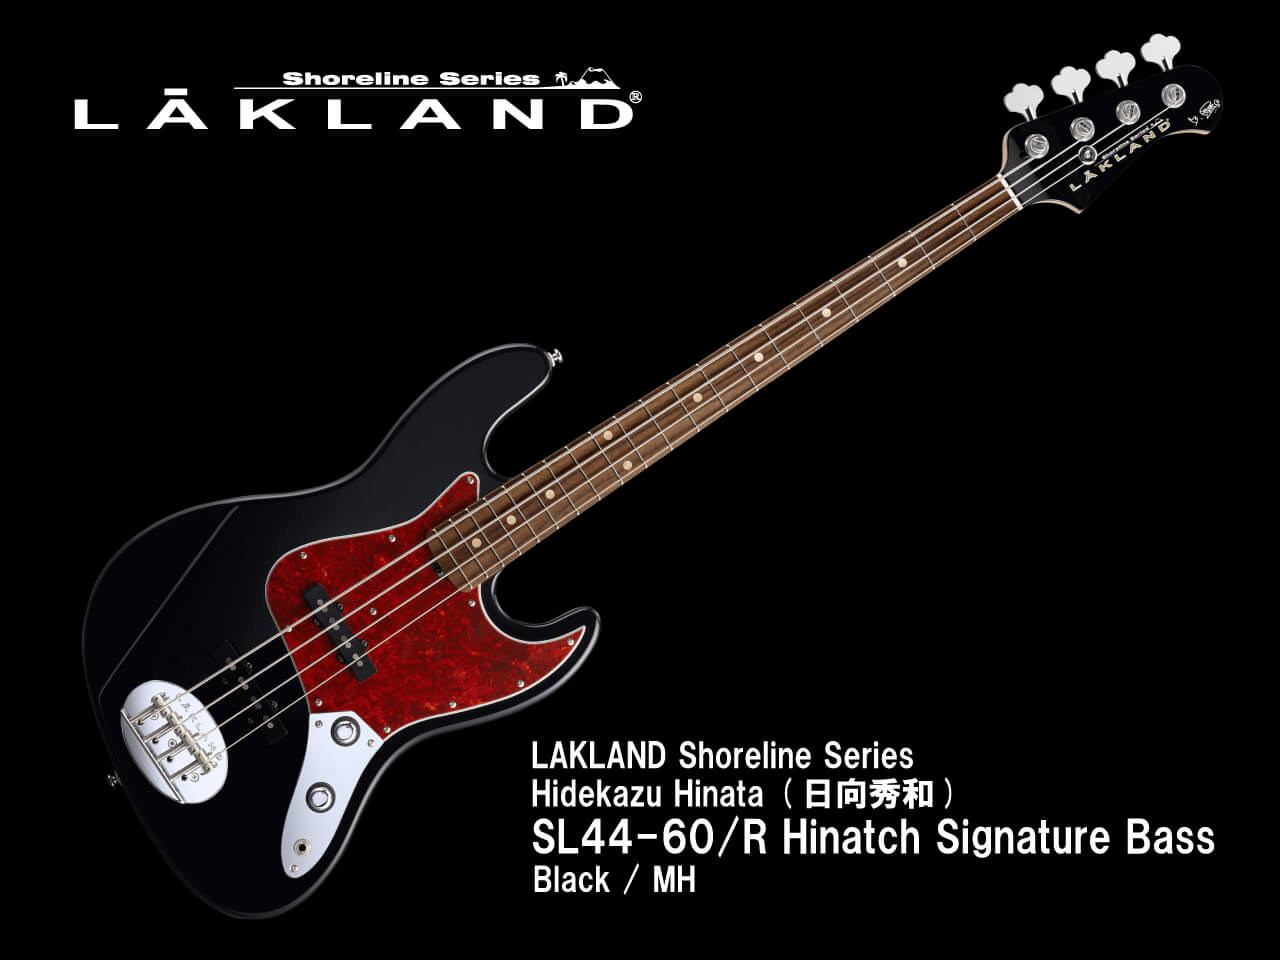 【受注生産】LAKLAND(レイクランド) Shoreline Series SL44-60/R Hinatch Signature Bass Black / MH (日向秀和モデル)